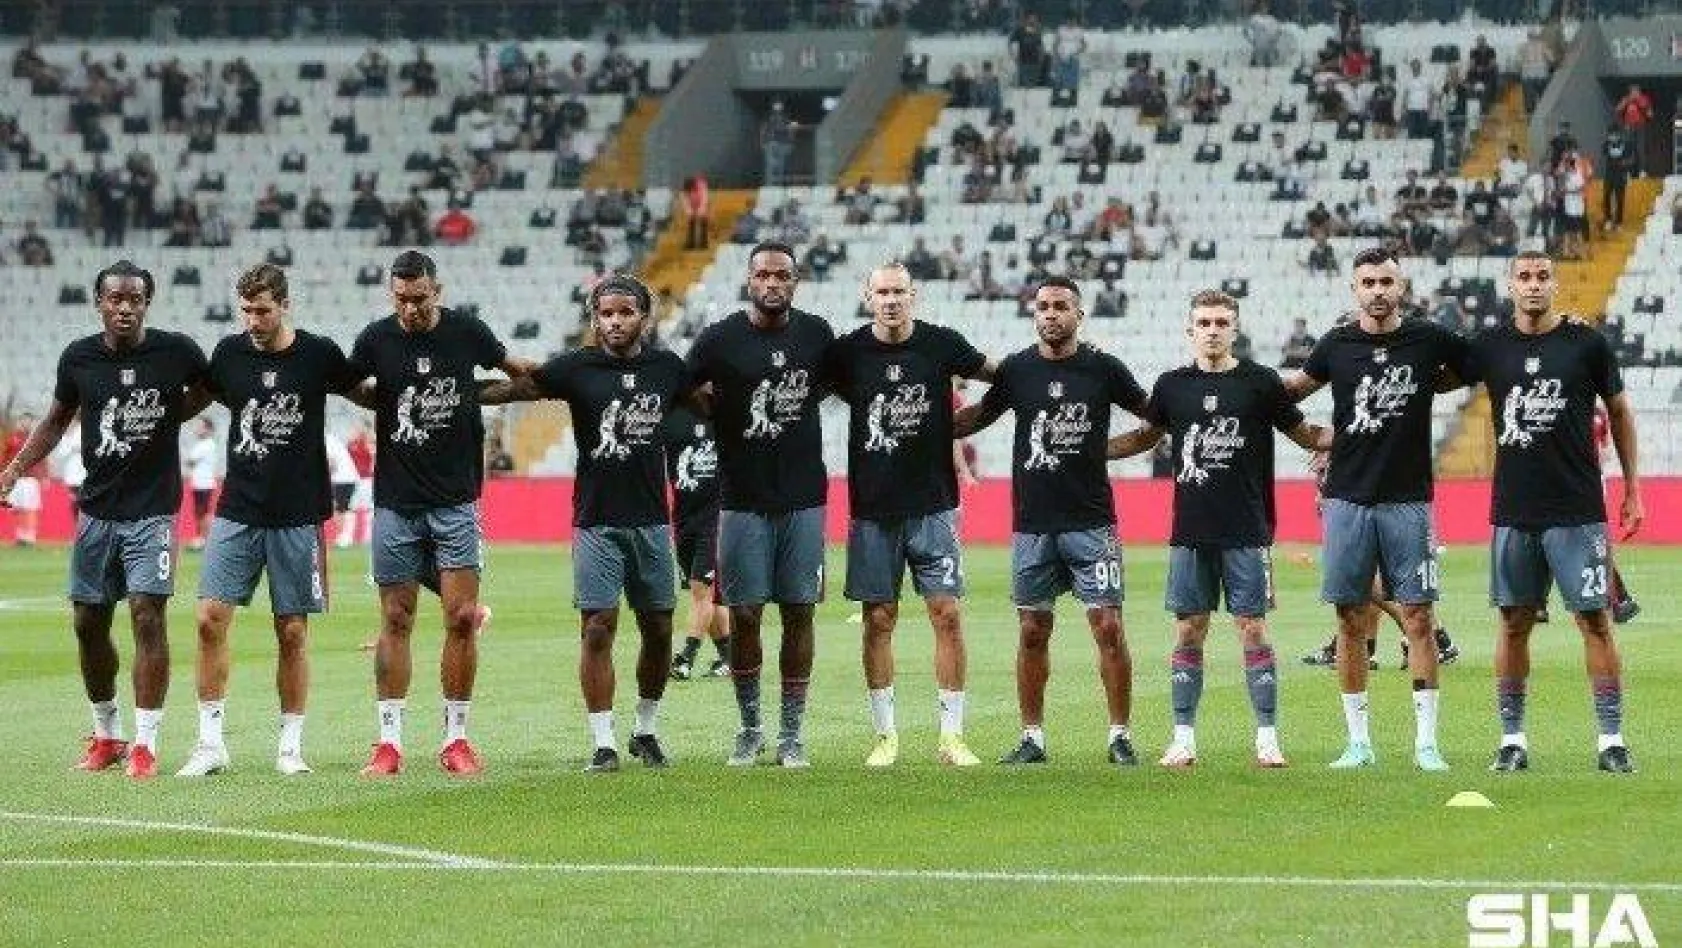 Süper Lig: Beşiktaş: 0 - Karagümrük: 0 (Maç devam ediyor)